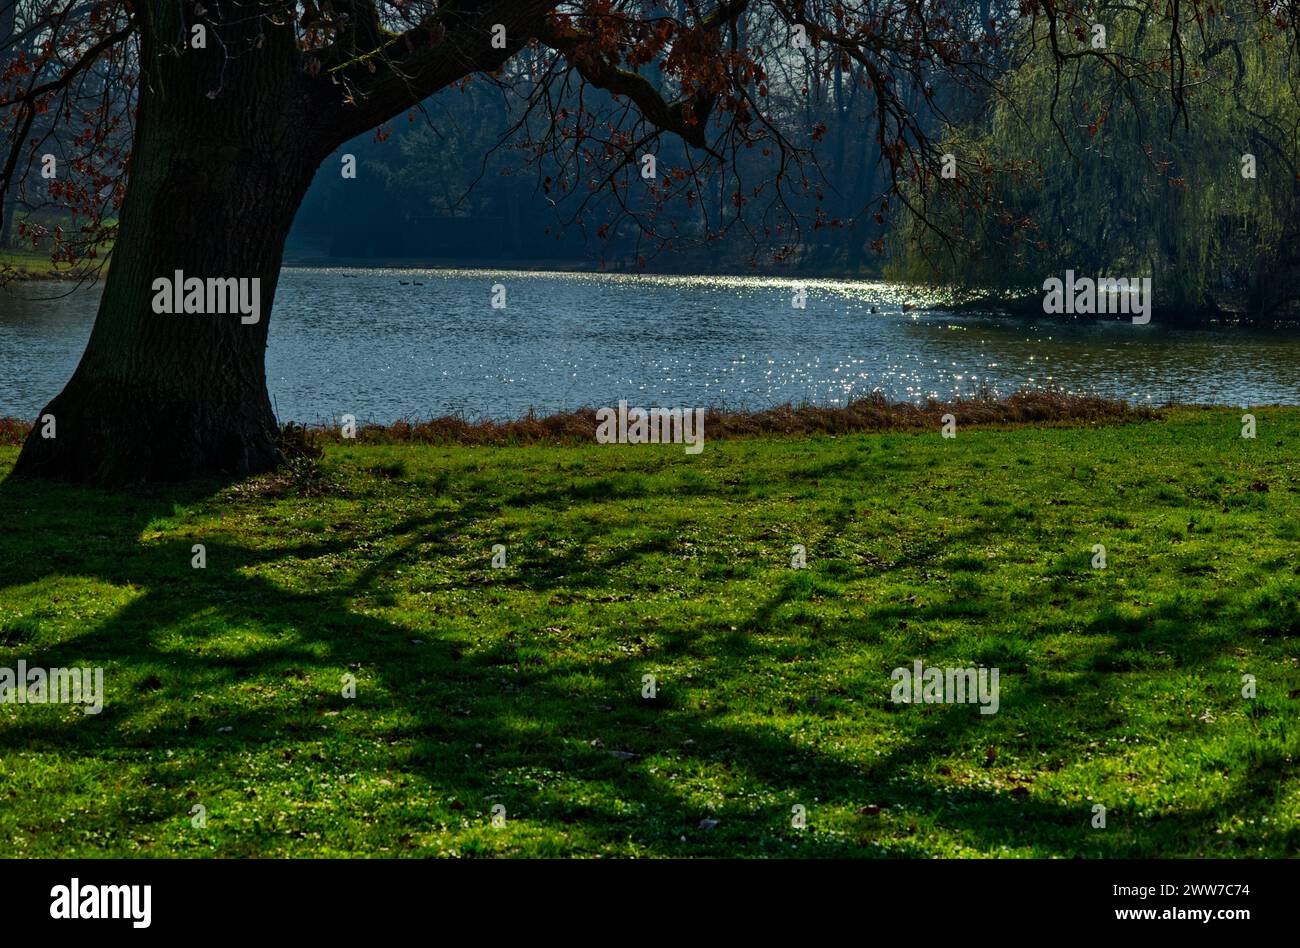 Scenario romantico di un'area lungolago in un parco, vista su un prato verde con ombre di un albero e sulla superficie blu dell'acqua Foto Stock